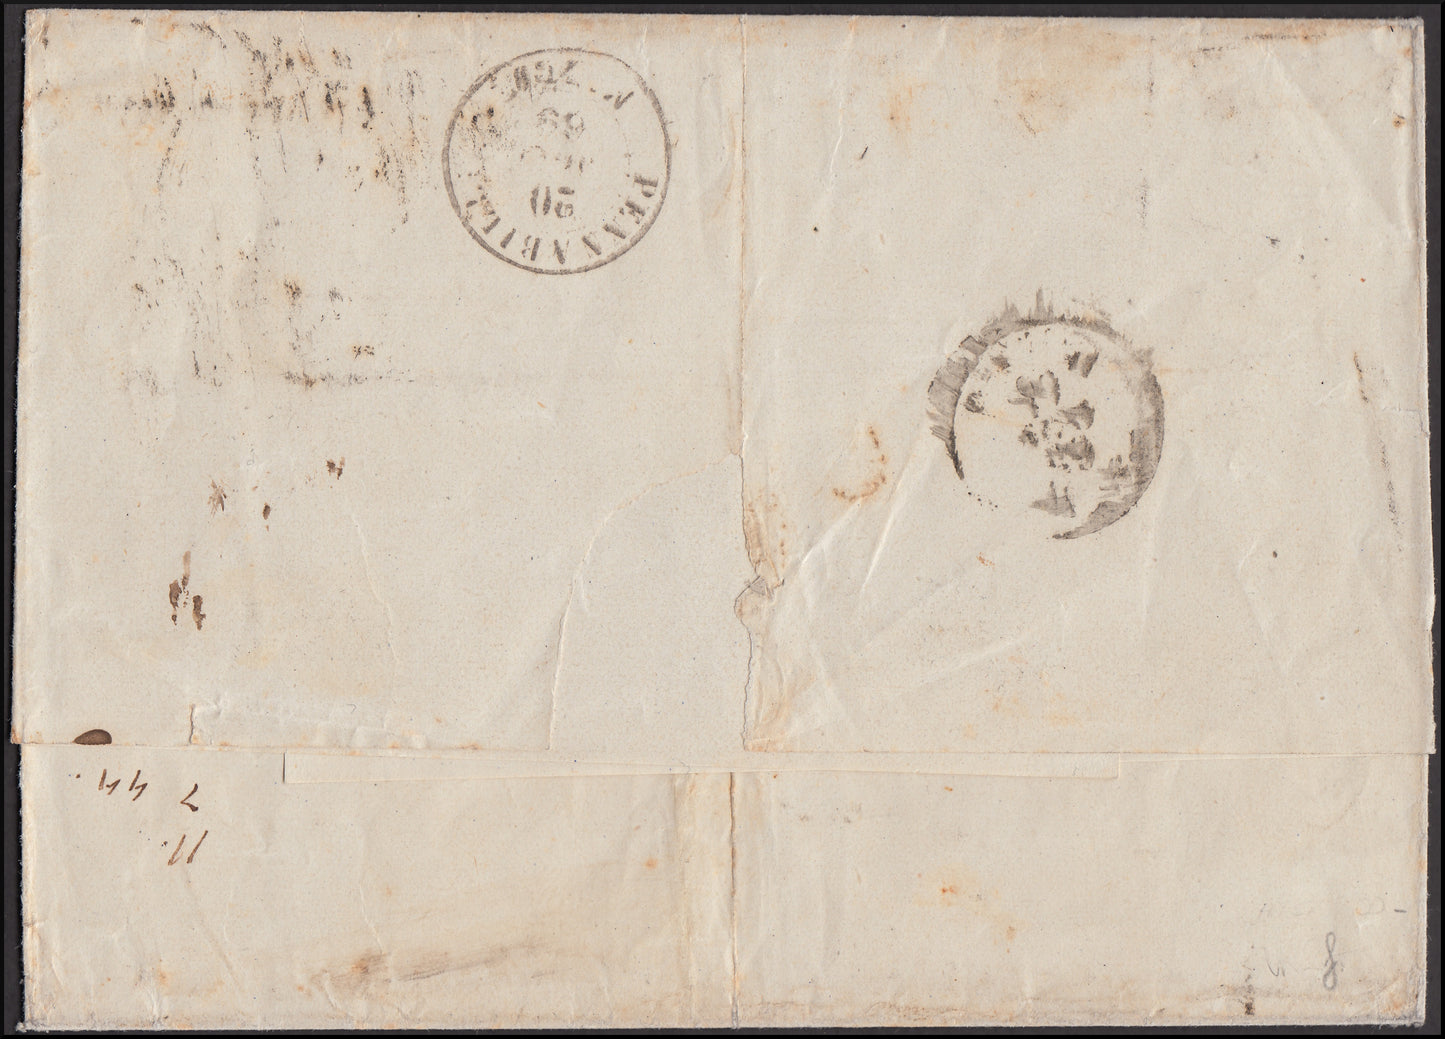 Stato Pontificio, lettera spedita da ROMA per MonteFeltro Pennabilli 18/8/69 affrancata con c. 80 rosa chiaro (30)